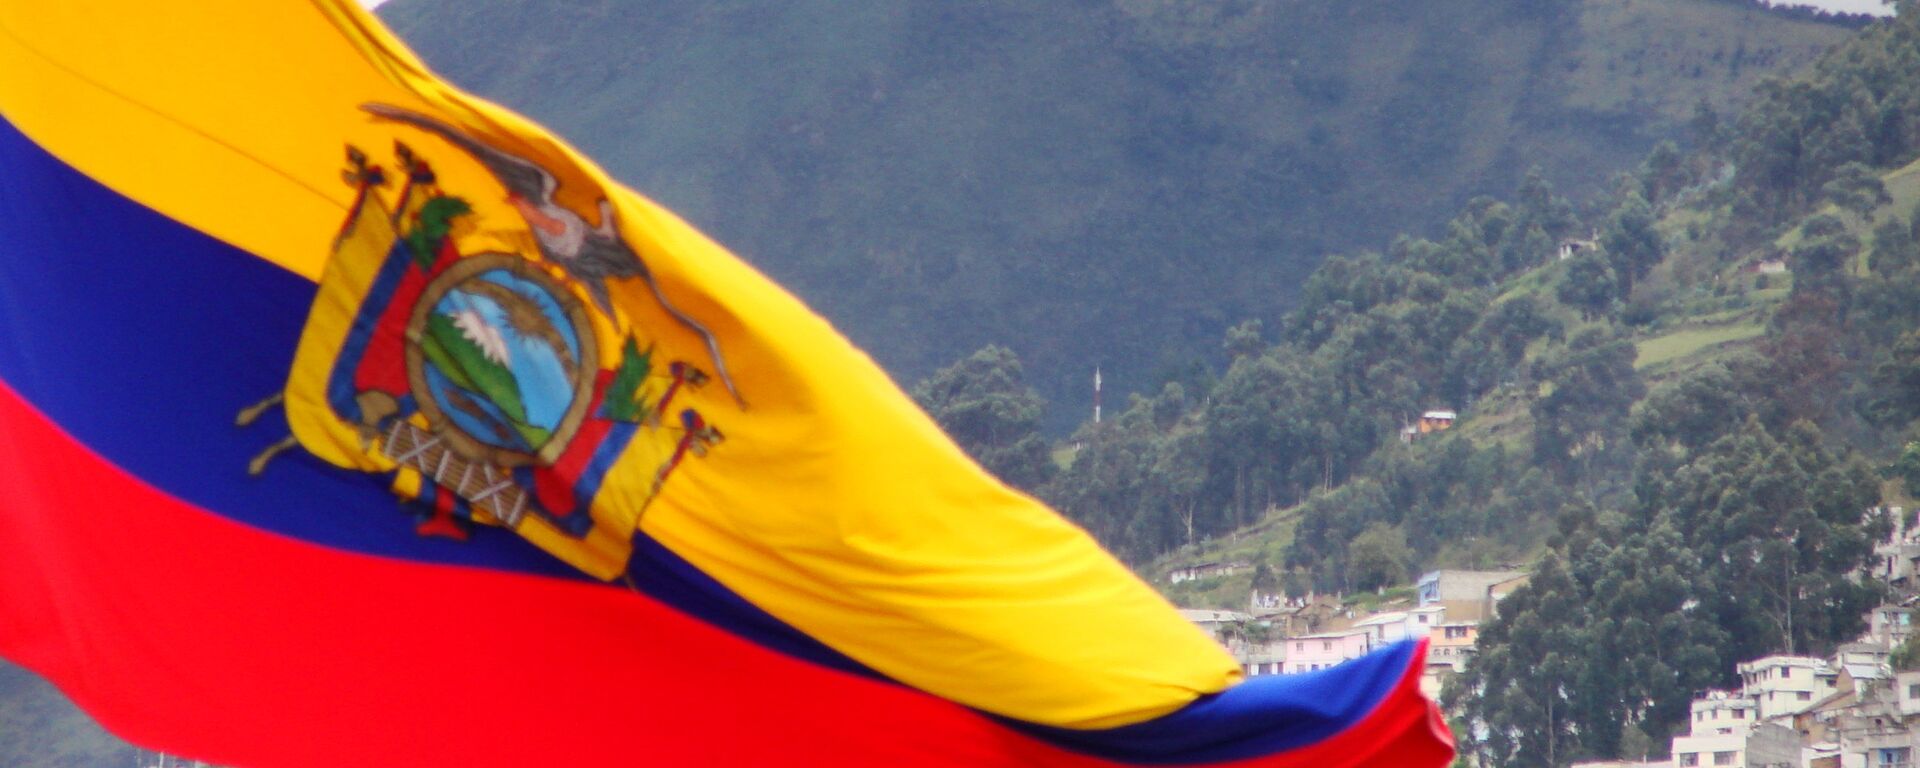 Bandera de Ecuador - Sputnik Mundo, 1920, 17.06.2021